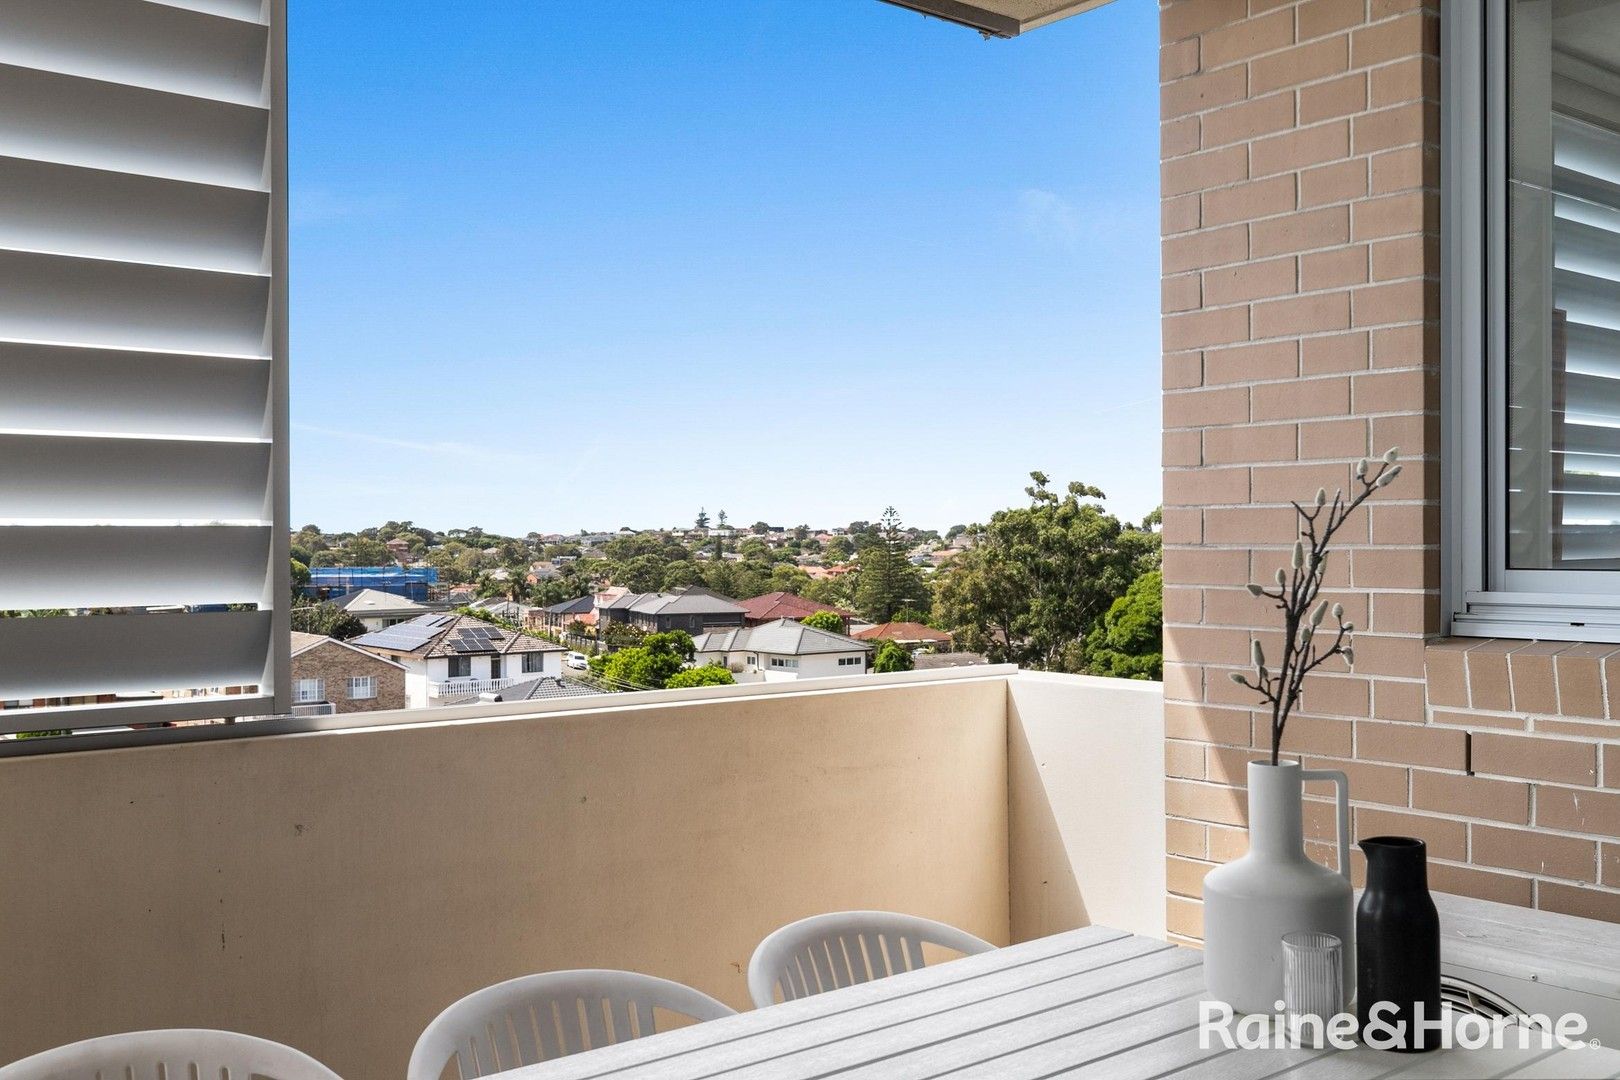 2 bedrooms Apartment / Unit / Flat in C31/1-7 Daunt Avenue MATRAVILLE NSW, 2036